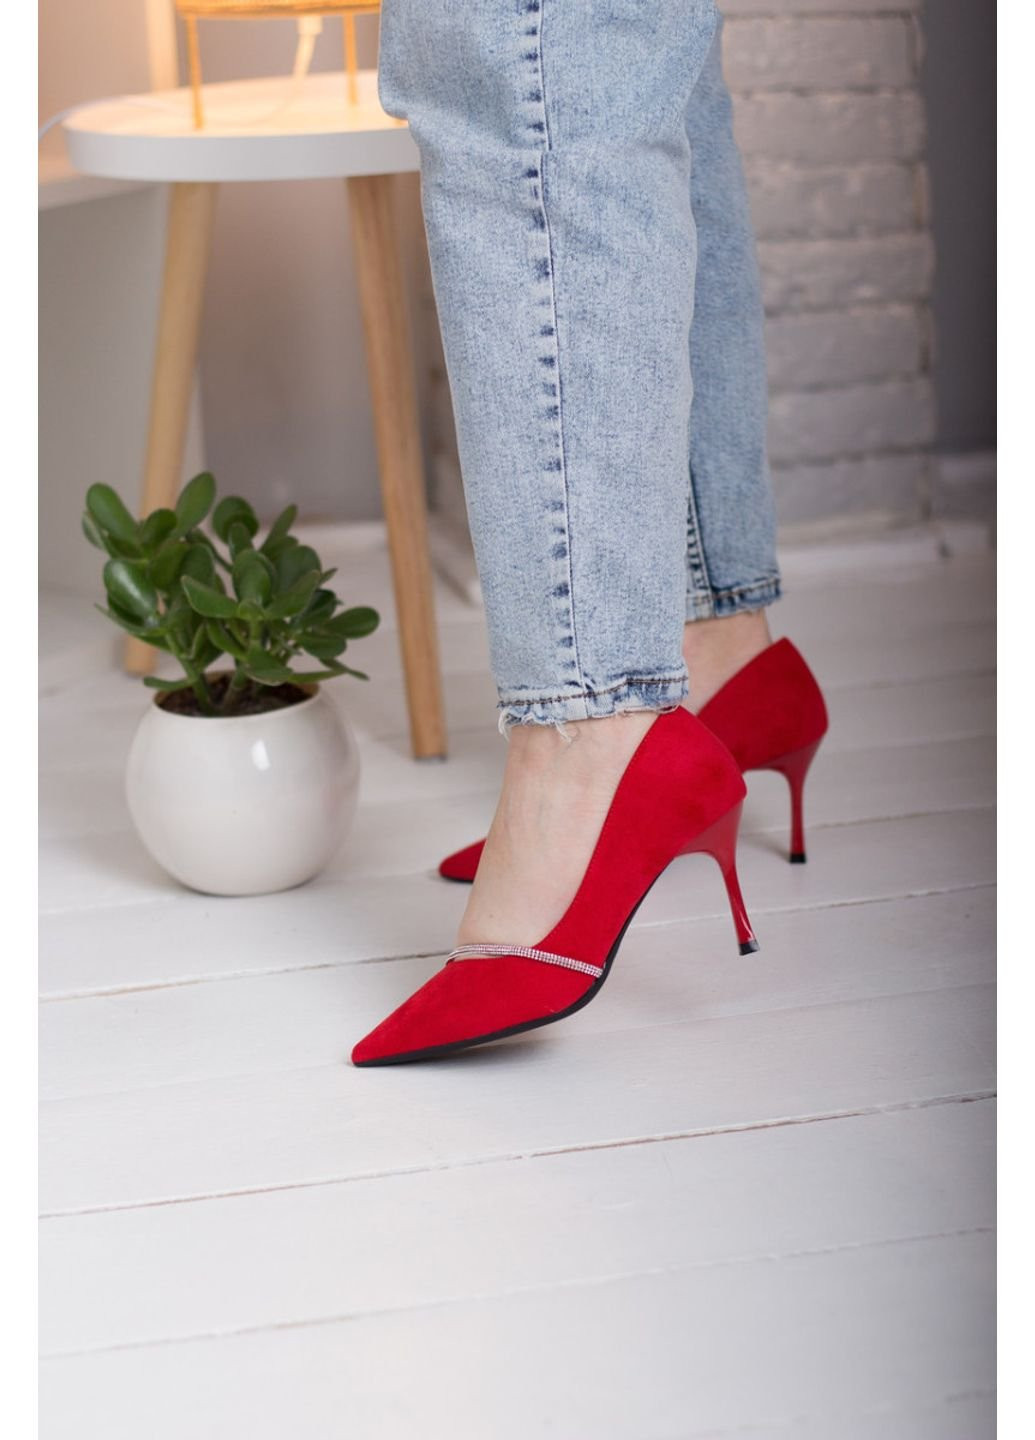 Туфли женские Abi 2564 38 24,5 см Красный Fashion